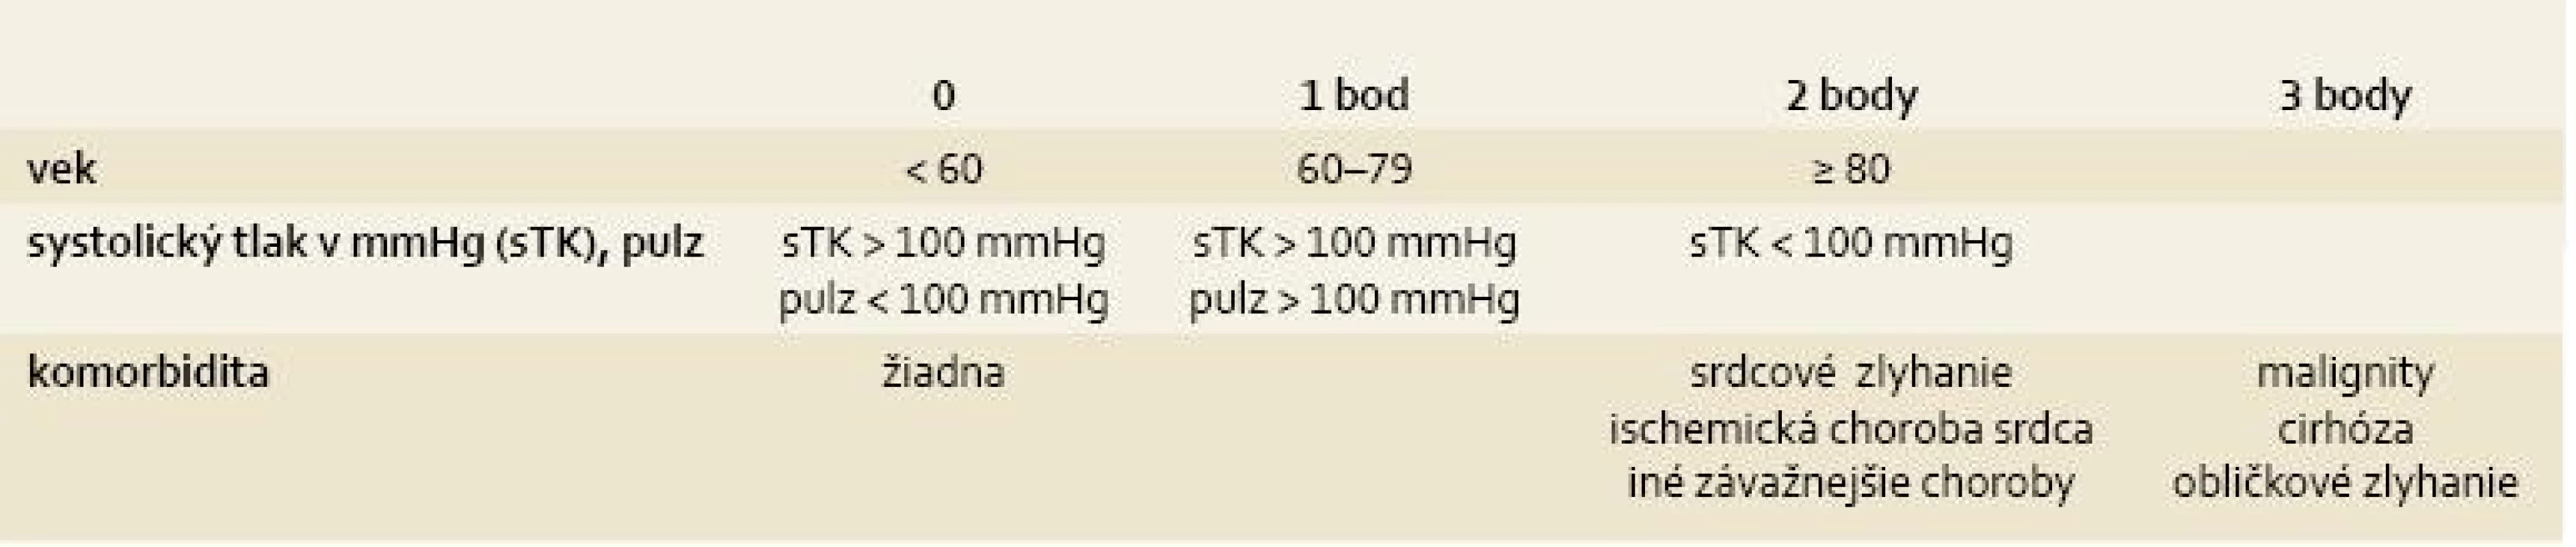 Klinické Rockallovo skóre, súčet bodov v jednotlivých v stĺpcoch pre vek, tlak krvi/pulz, komorbiditu.
Tab. 1. Clinical Rockall score, total of points for age, blood pressure/pulse and comorbidity.